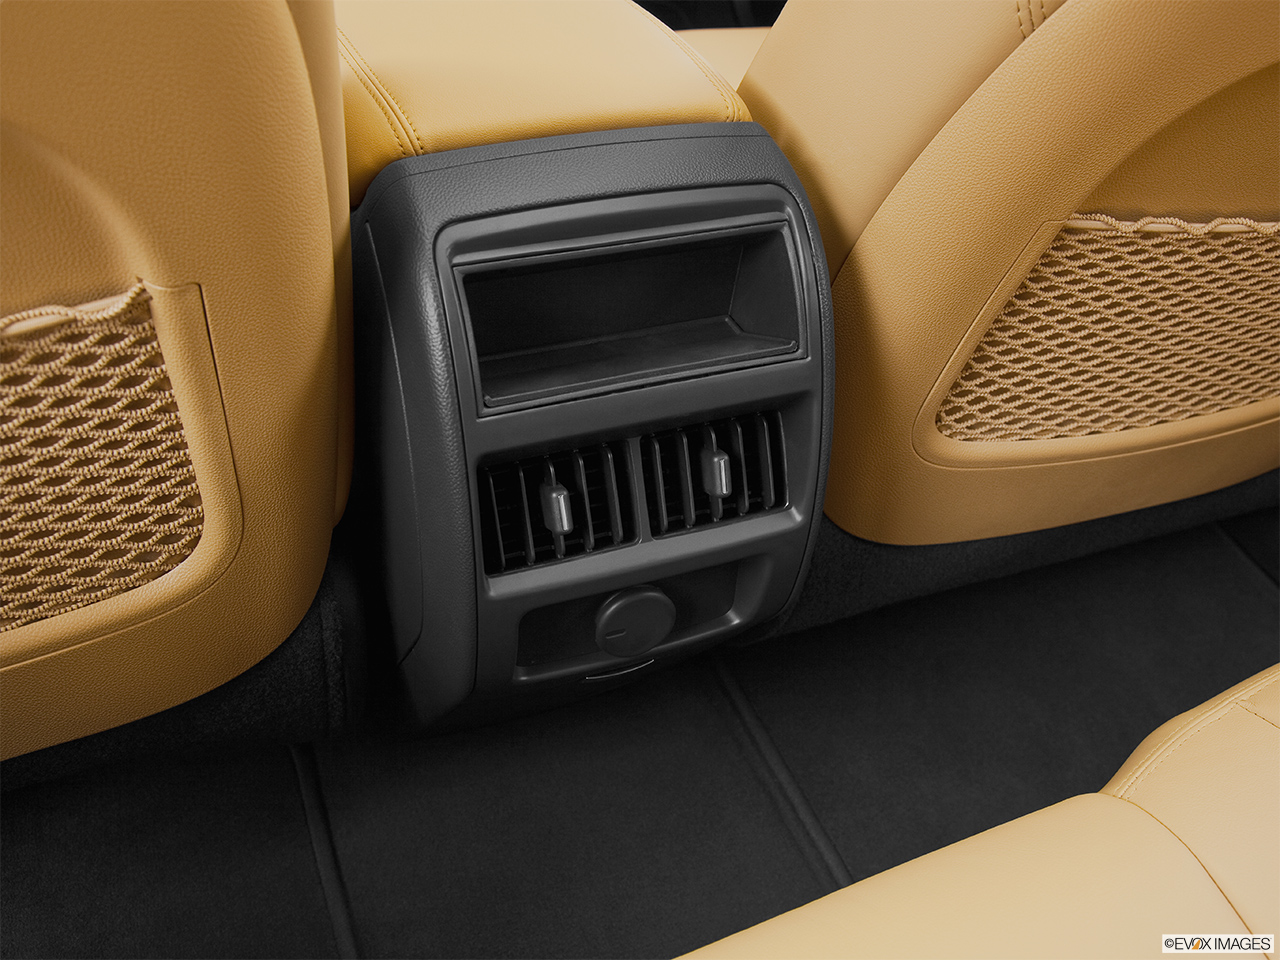 2014 Cadillac SRX Luxury Rear A/C controls. 